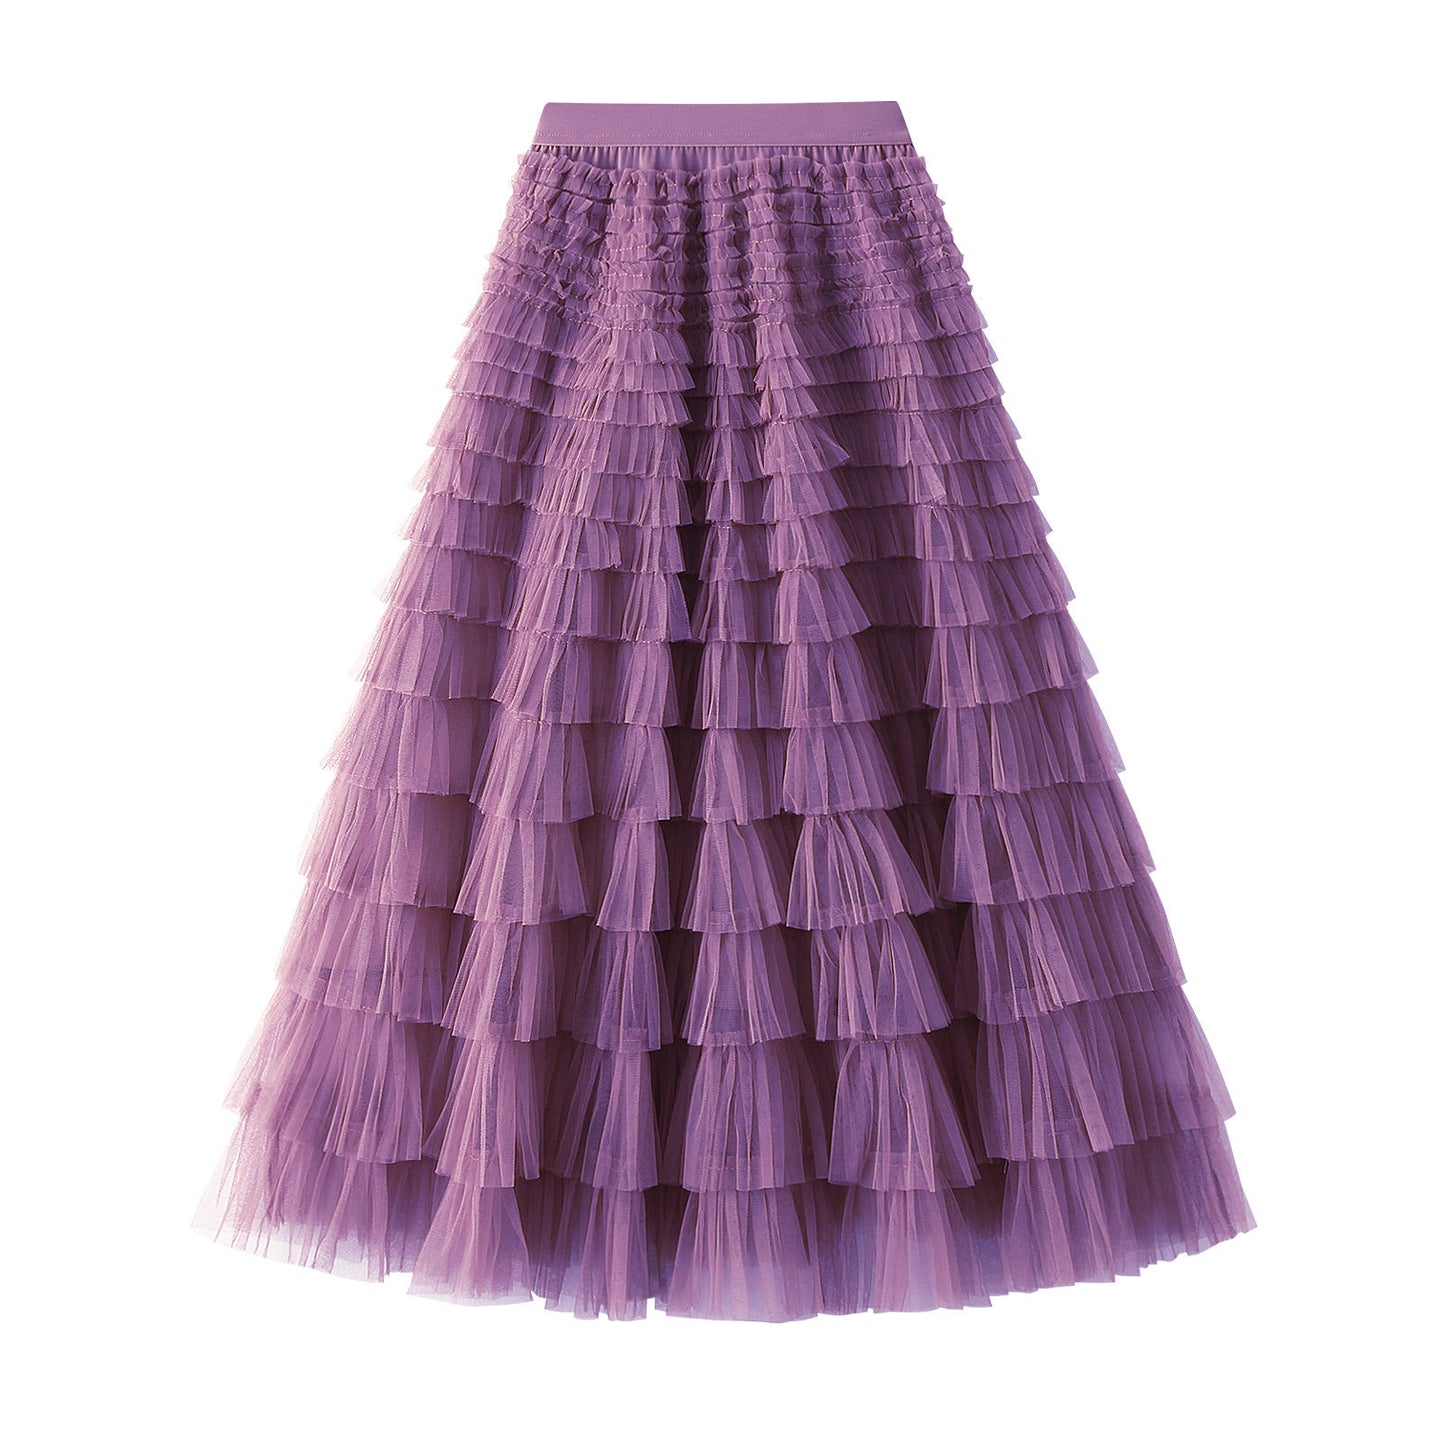 A-Line Mesh Ruffle Skirt Women's Temperament Sweet Long Skirt Slim Cupcake Dress Womens Clothing